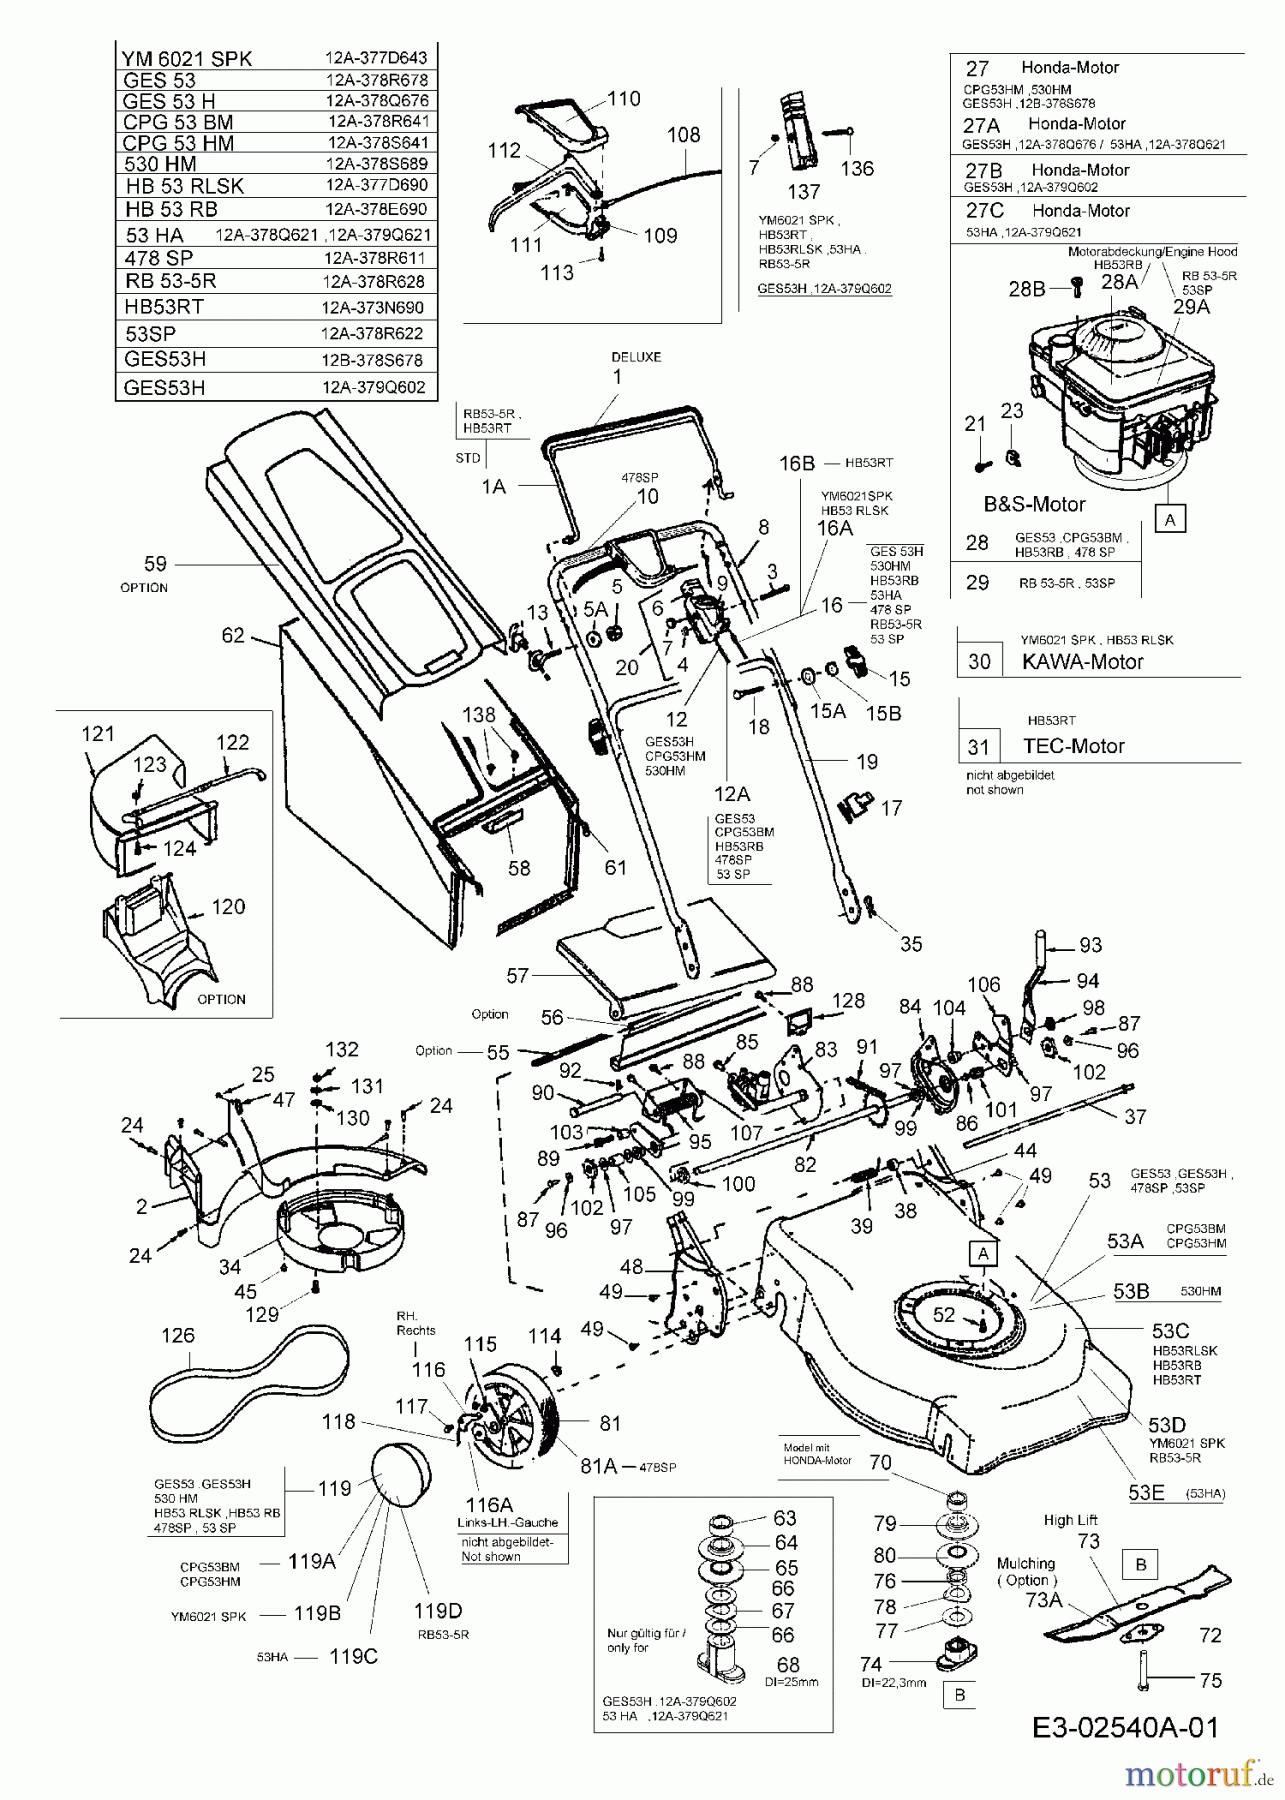  Greenway Motormäher mit Antrieb 530 HM 12A-378S689  (2005) Grundgerät